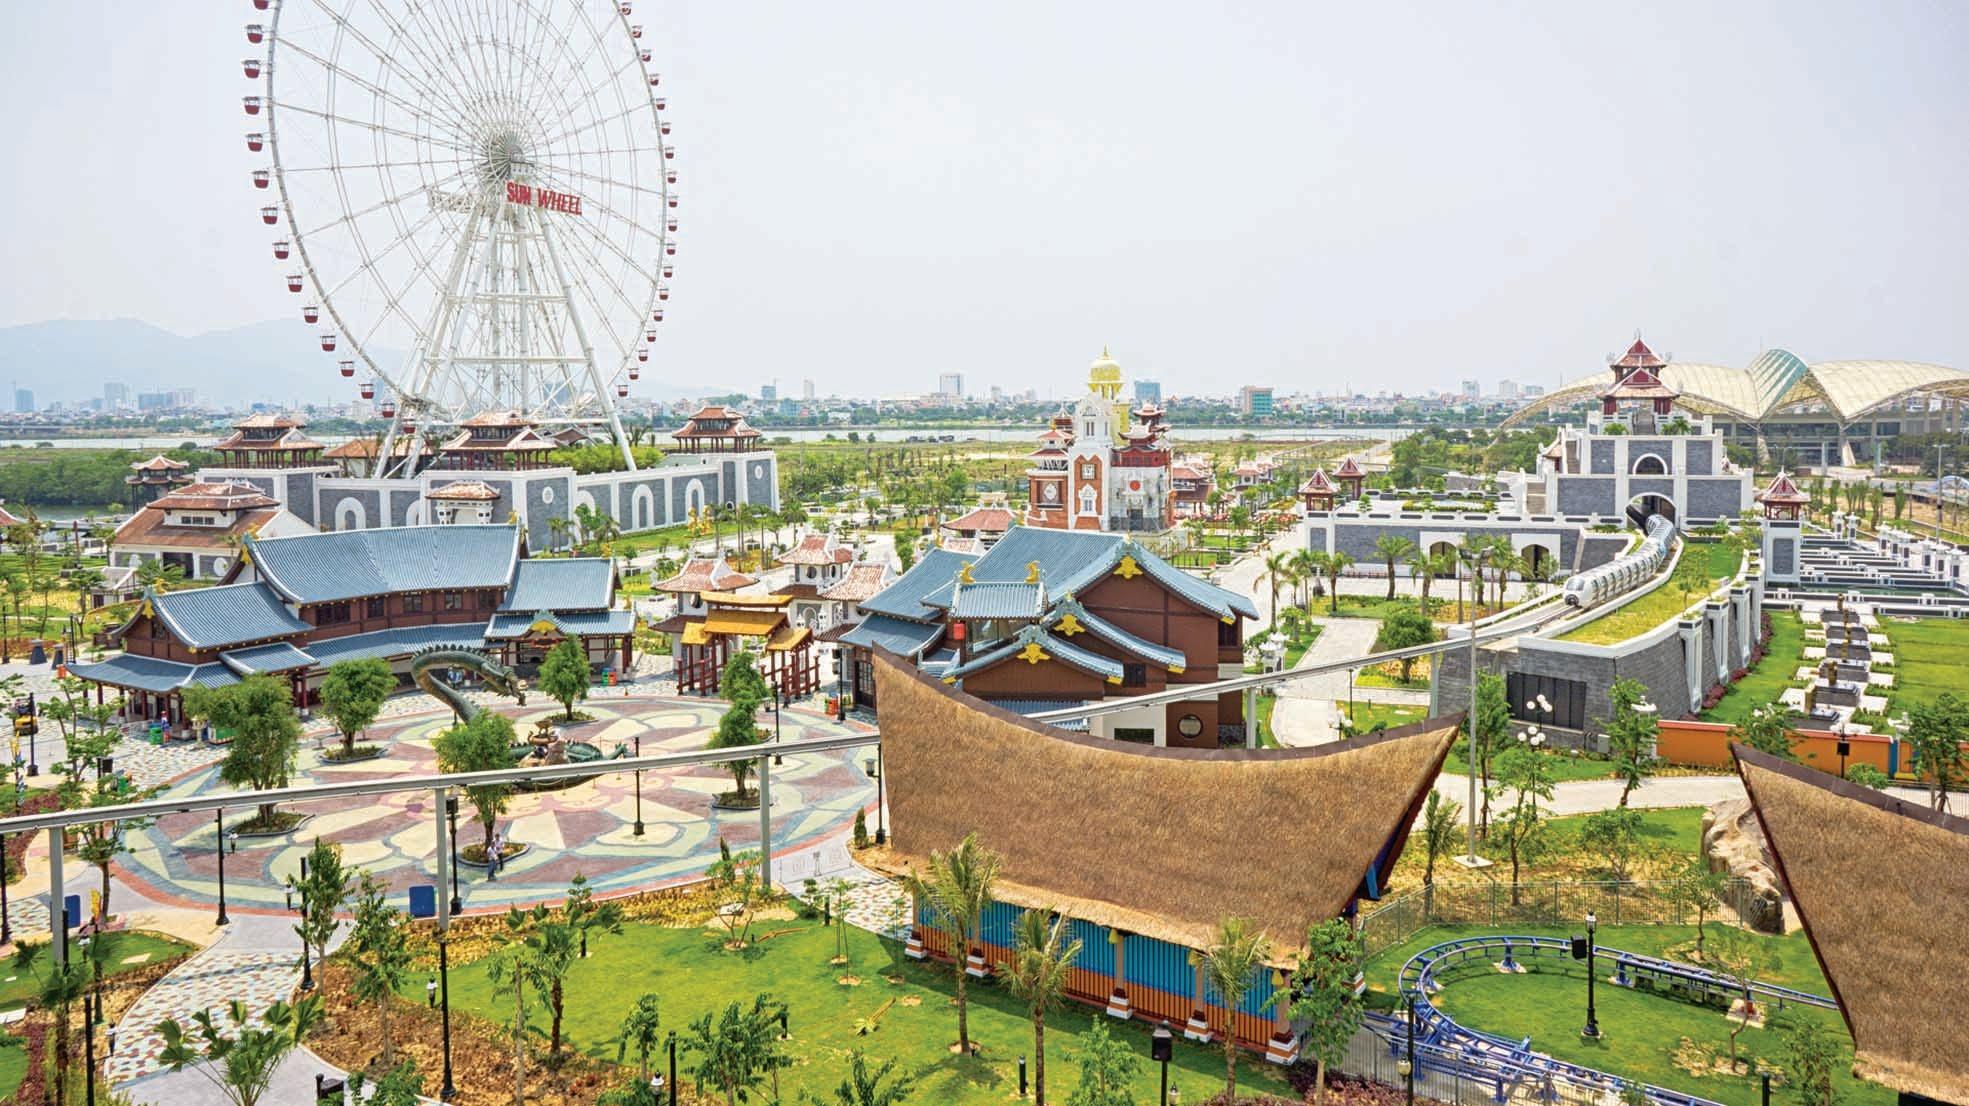 Asia Park - Địa điểm đi chơi 8/3 ở Đà Nẵng nổi tiếng.